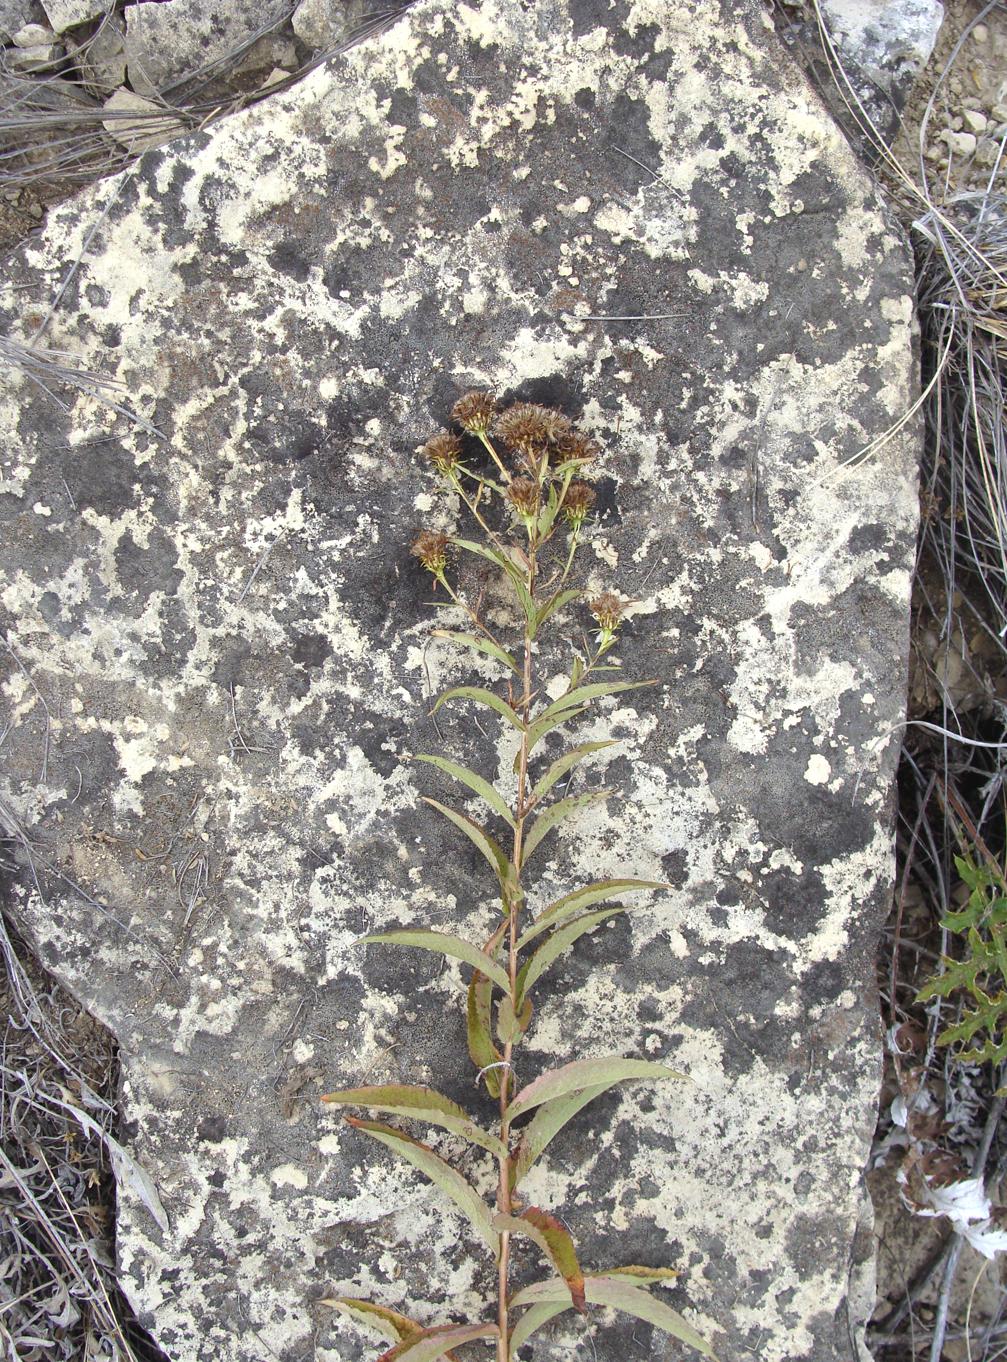 Image of genus Inula specimen.